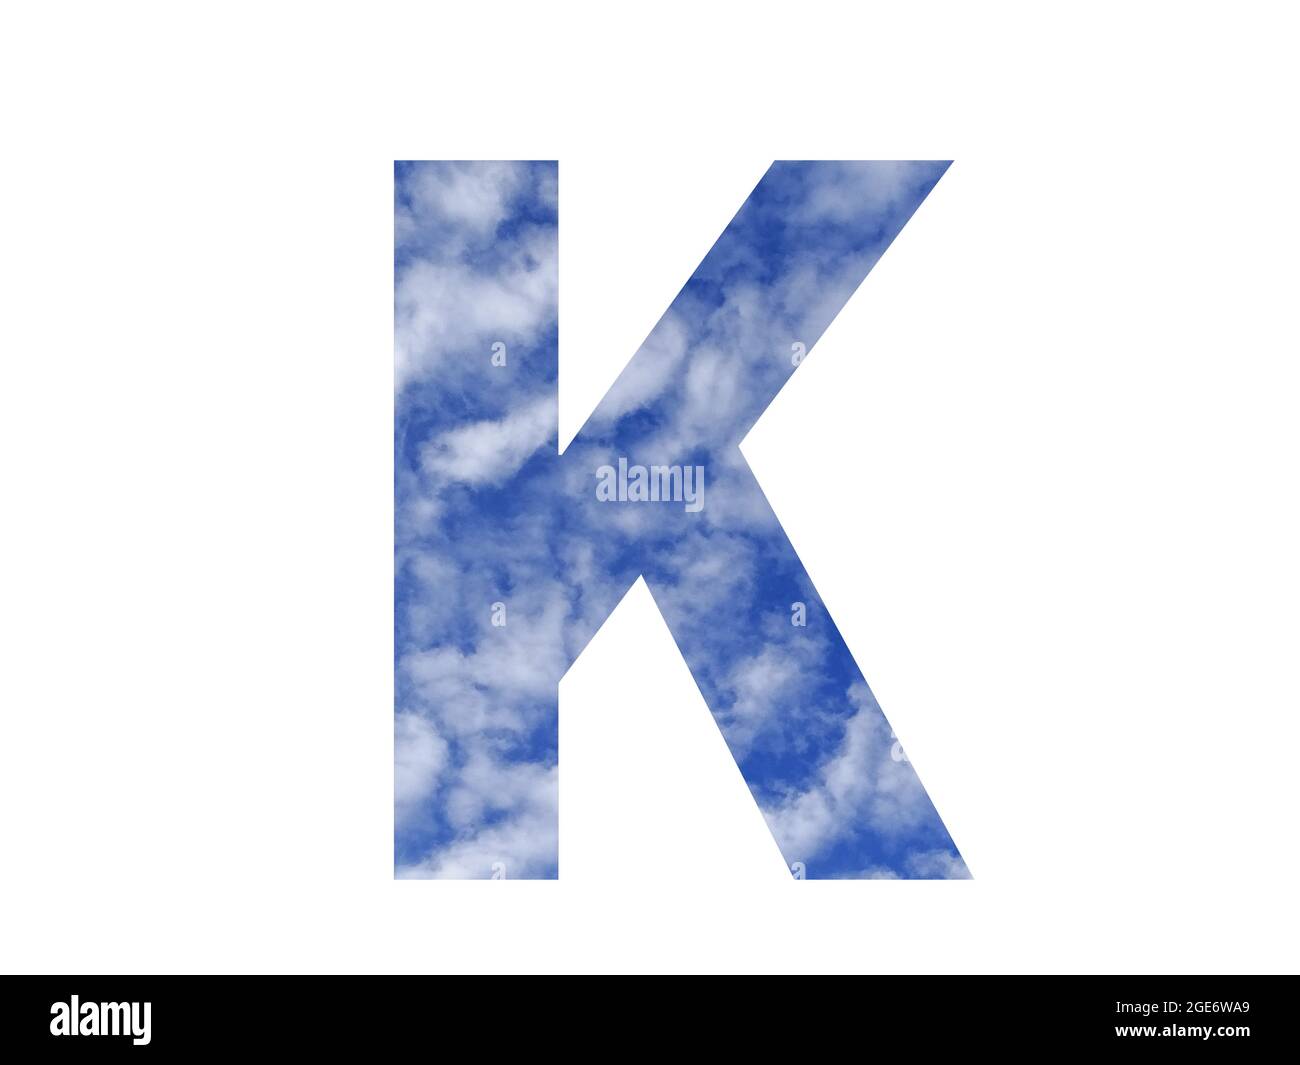 Lettre K de l'alphabet faite d'un ciel bleu et de nuages blancs, isolés sur un fond blanc Banque D'Images